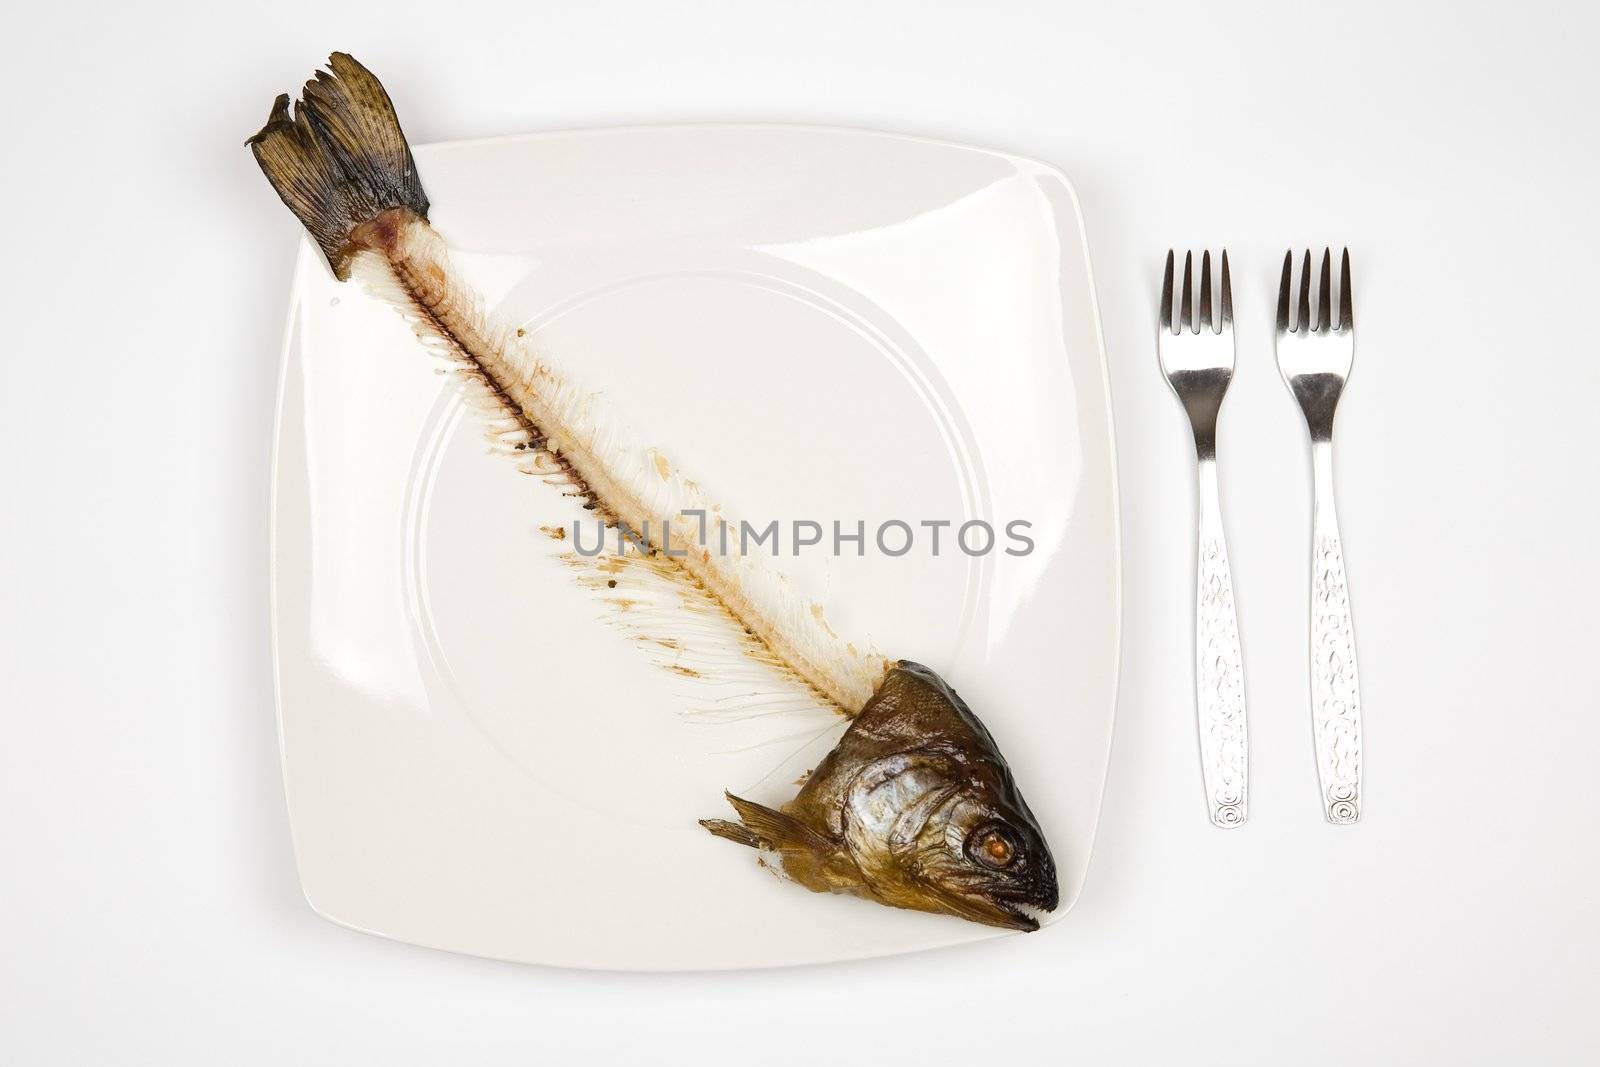 eaten fish by furzyk73